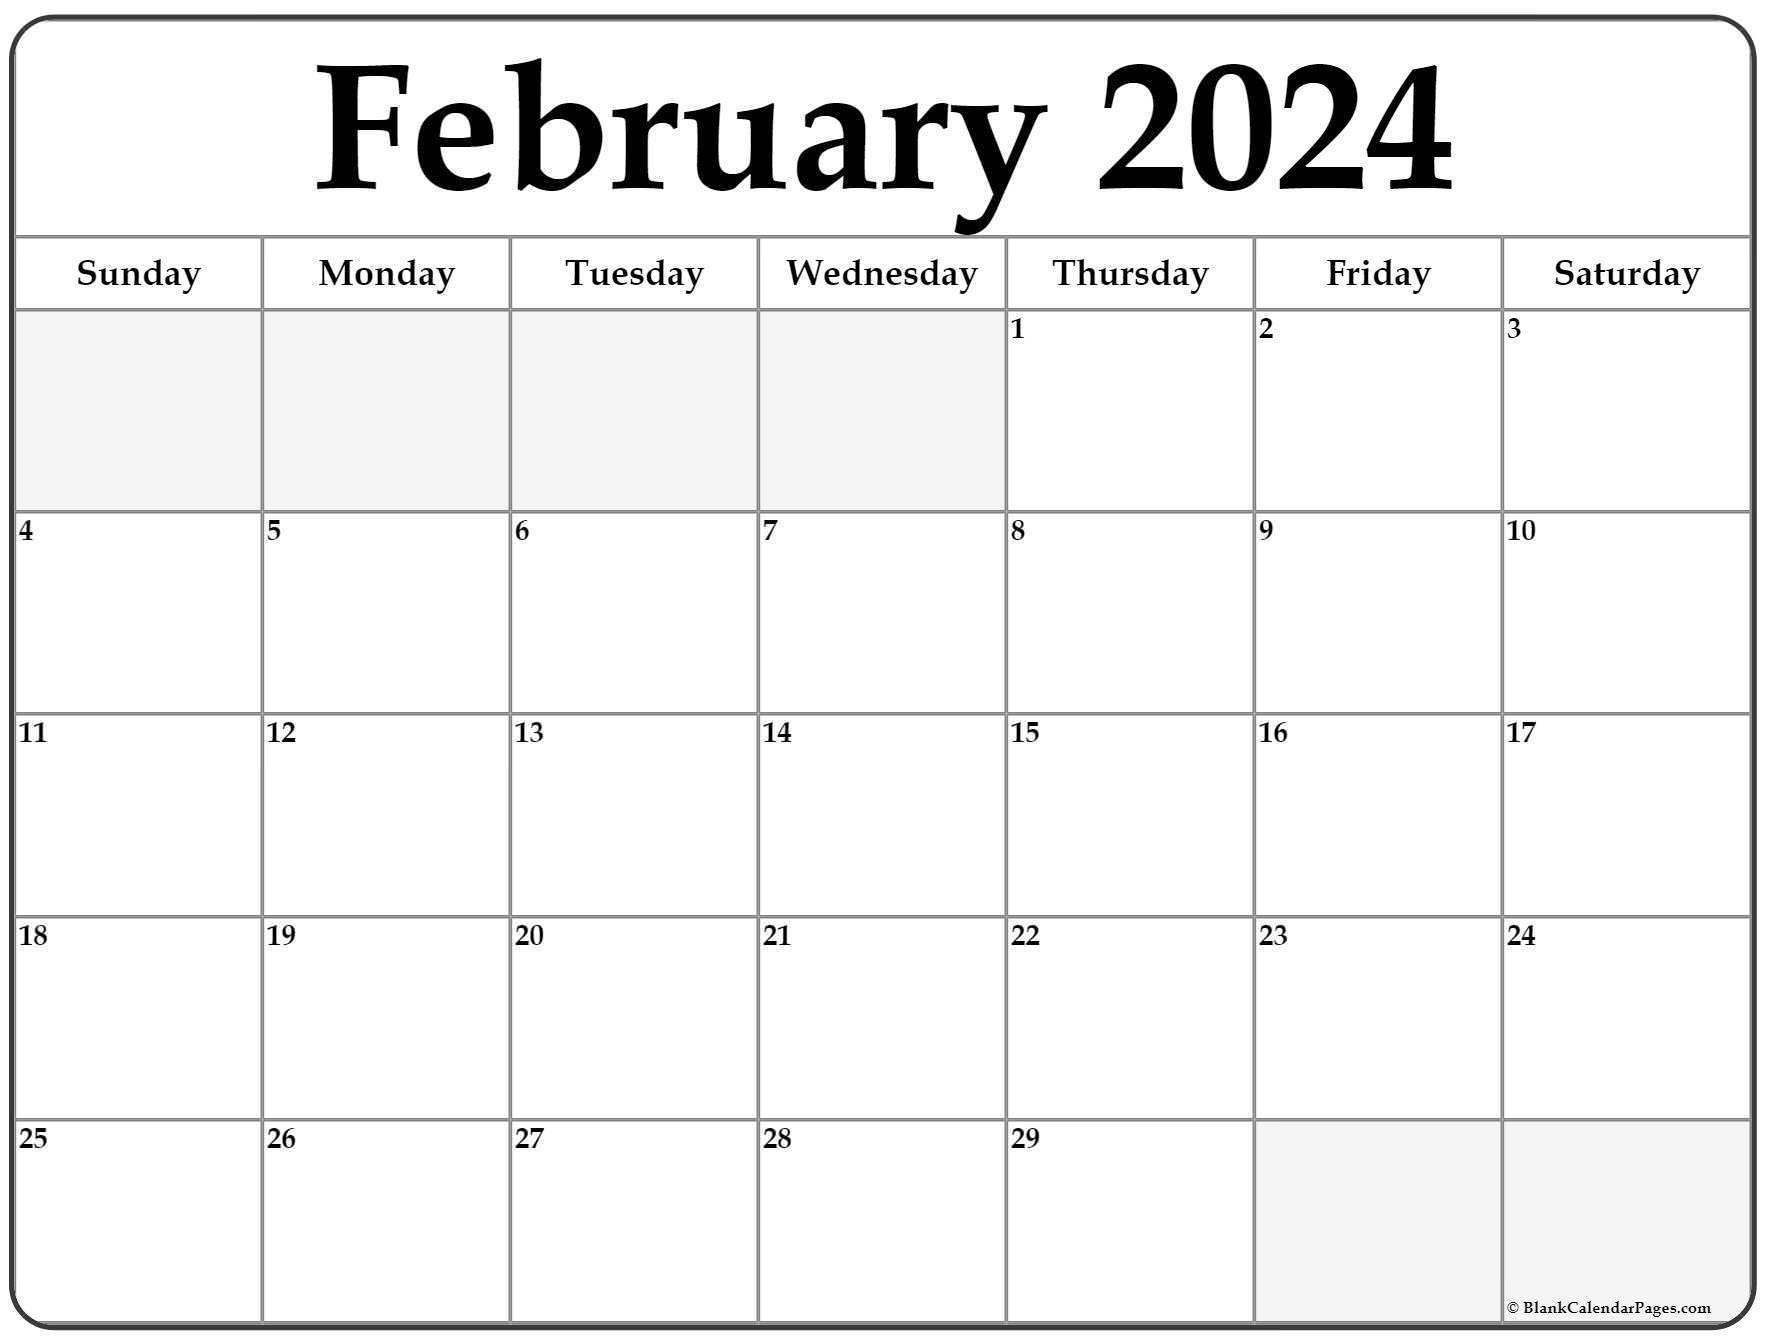 February 2022 Calendar Pdf February 2022 Calendar | Free Printable Calendar Templates